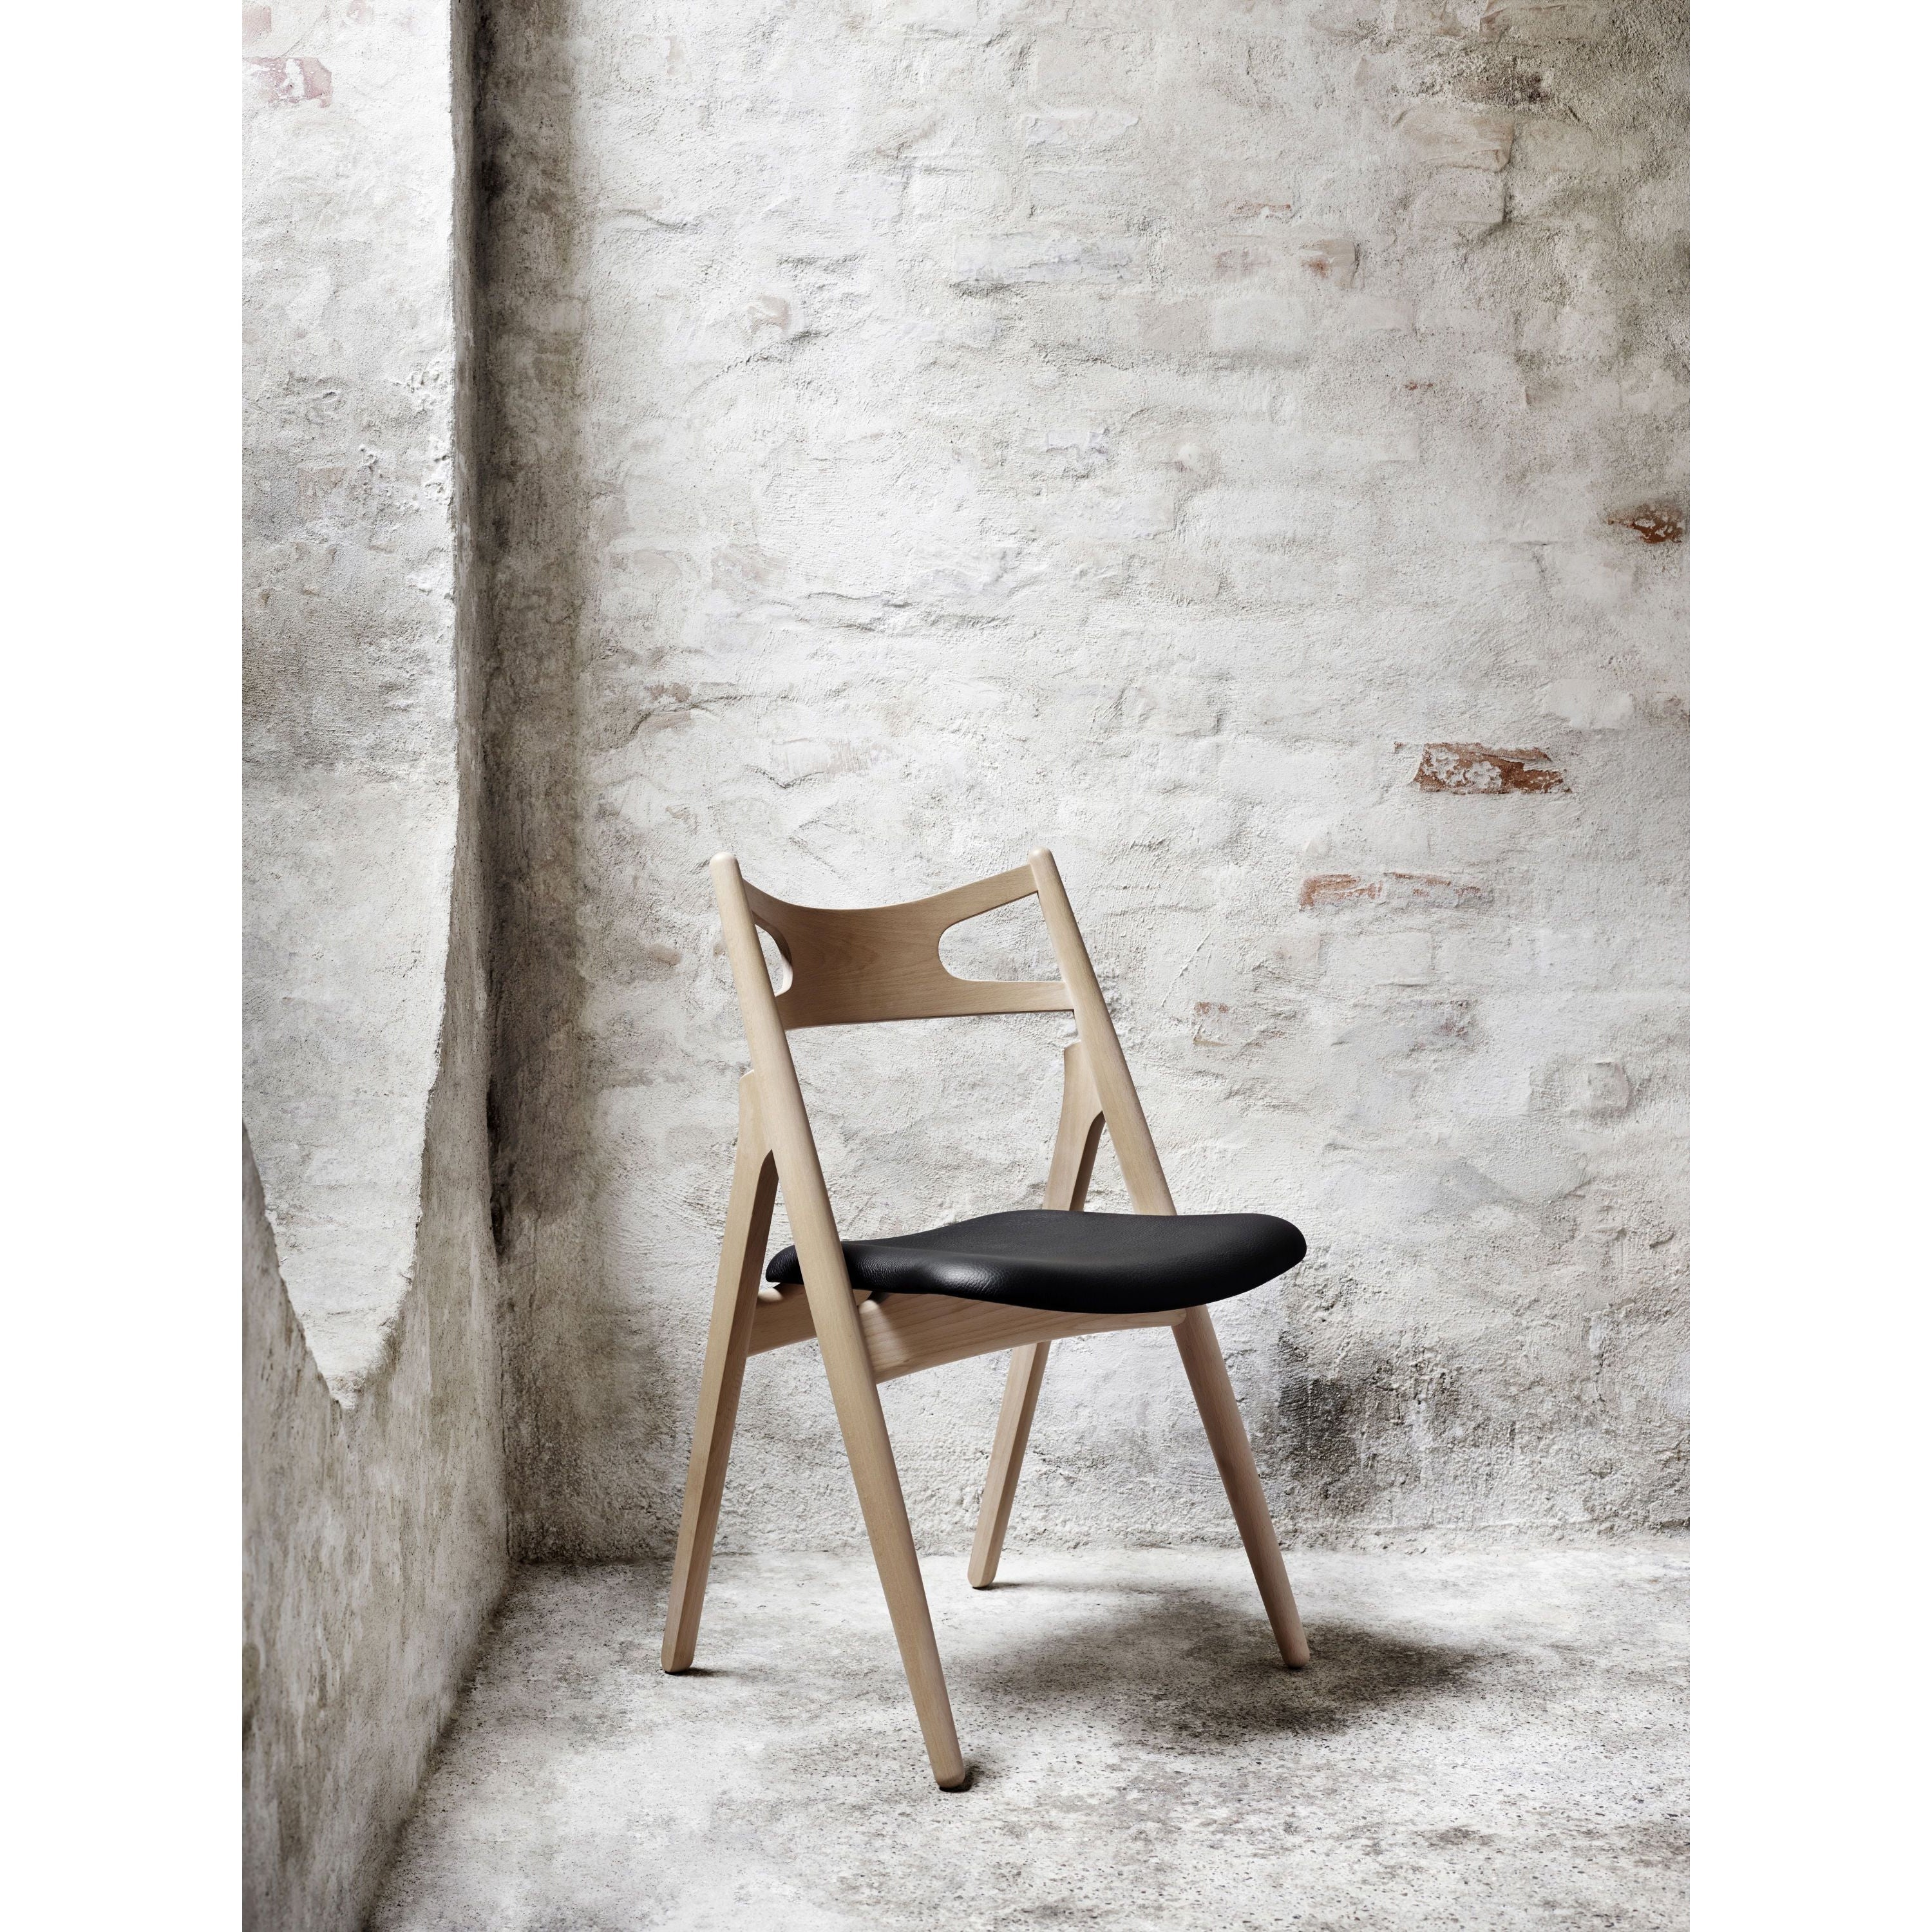 Carl Hansen CH29 P krzesło, naoliwiona dębowa/brązowa skóra